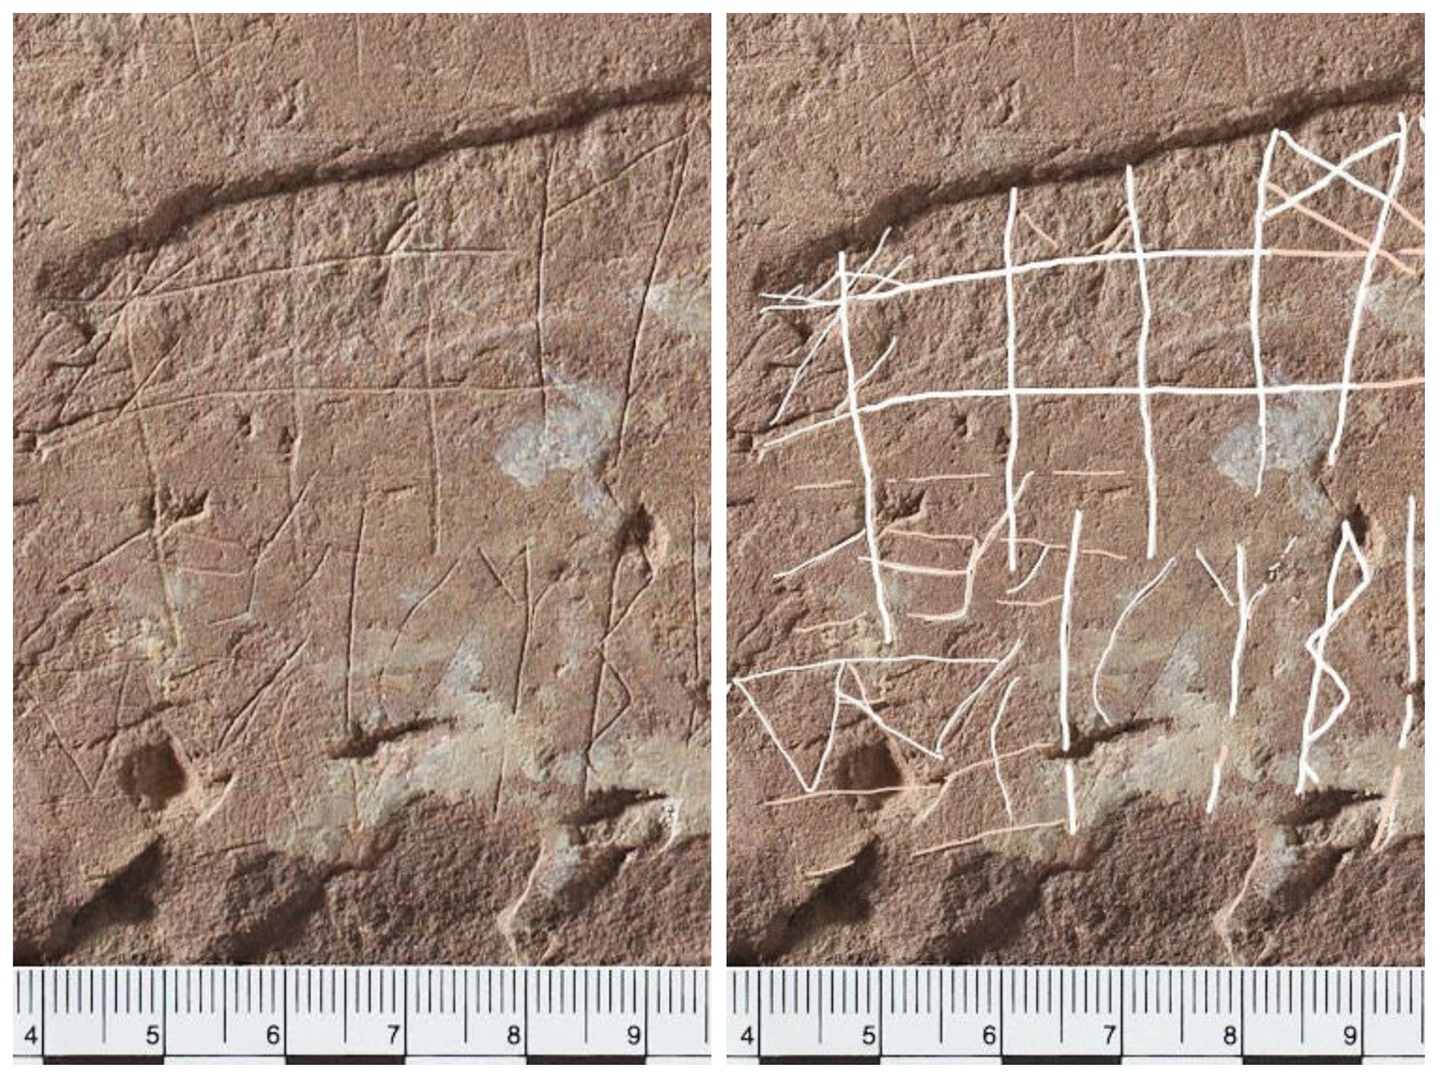 Une pierre runique vieille de 2 000 ans trouvée en Norvège pourrait être la plus ancienne de tous les temps et donner un aperçu des anciens systèmes d'écriture